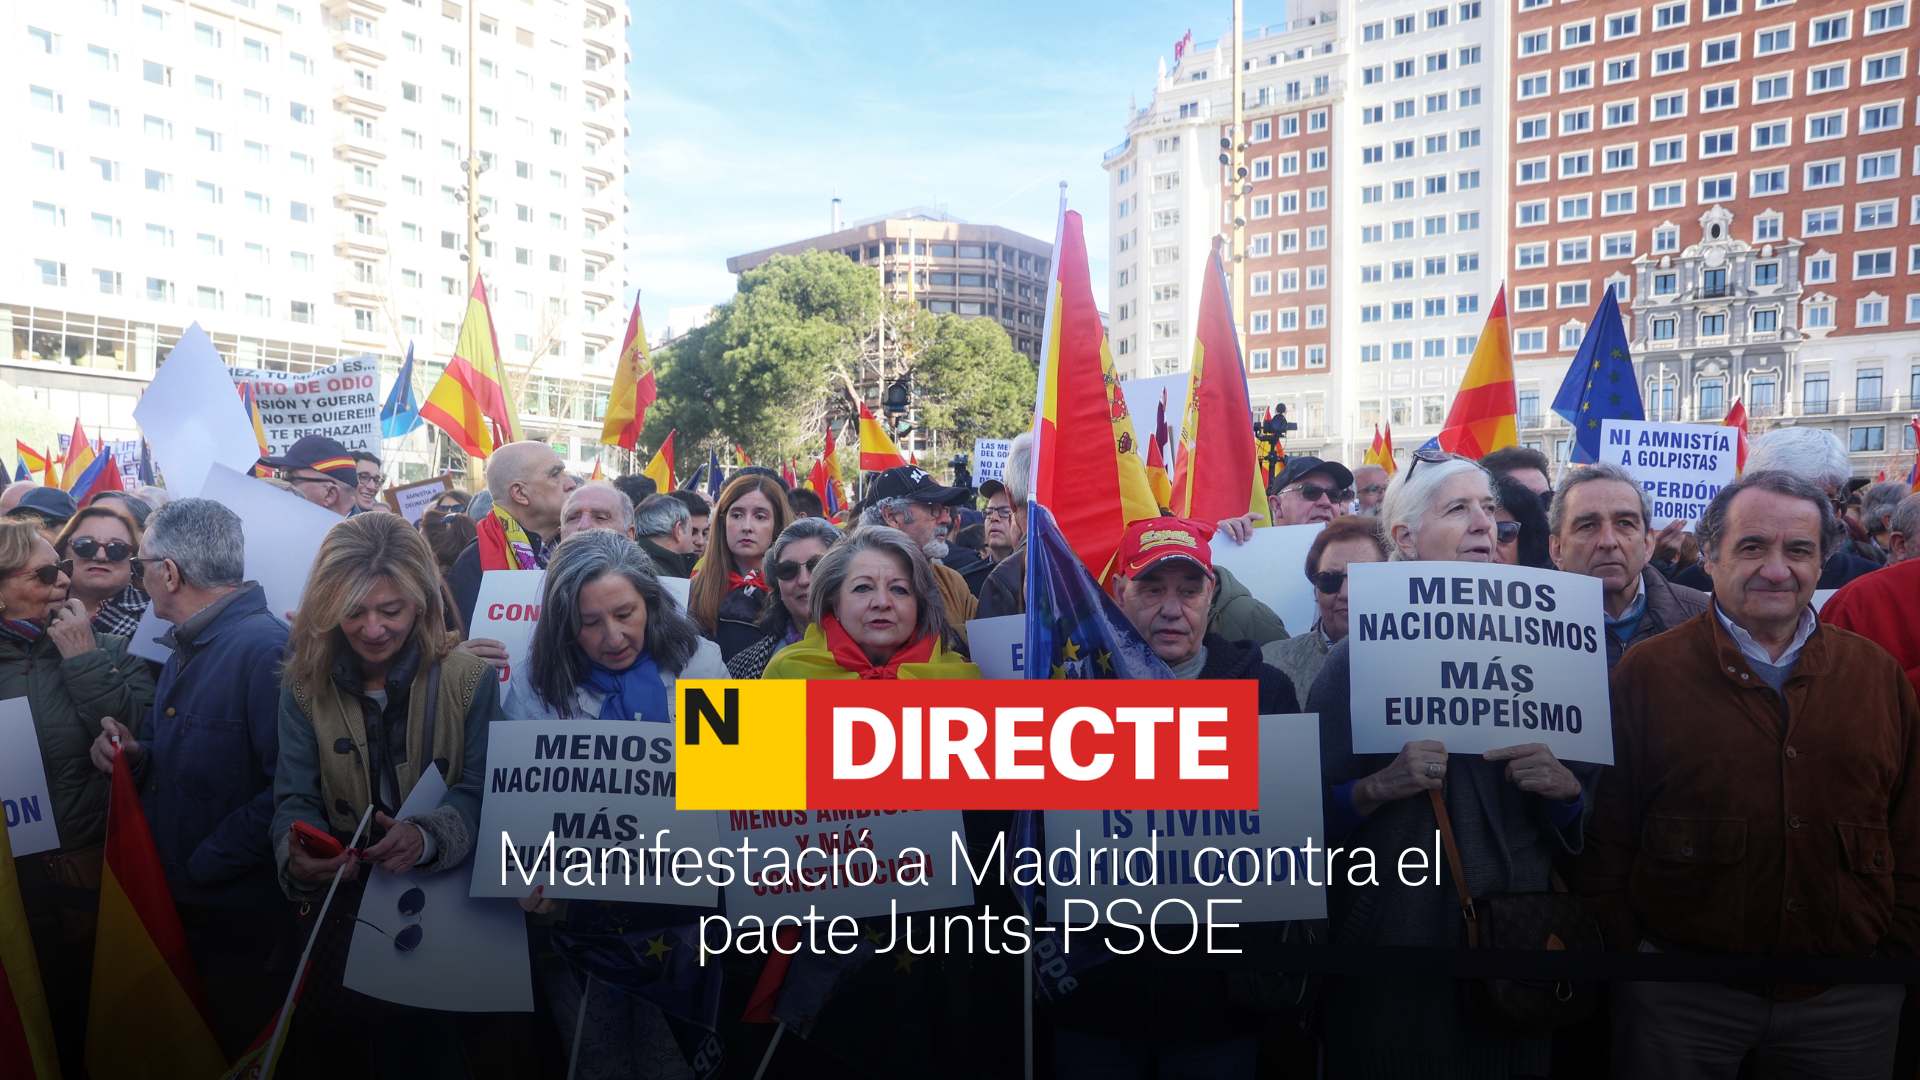 Manifestació a Madrid avui contra el pacte Junts-PSOE, DIRECTE | Última hora de la protesta del PP